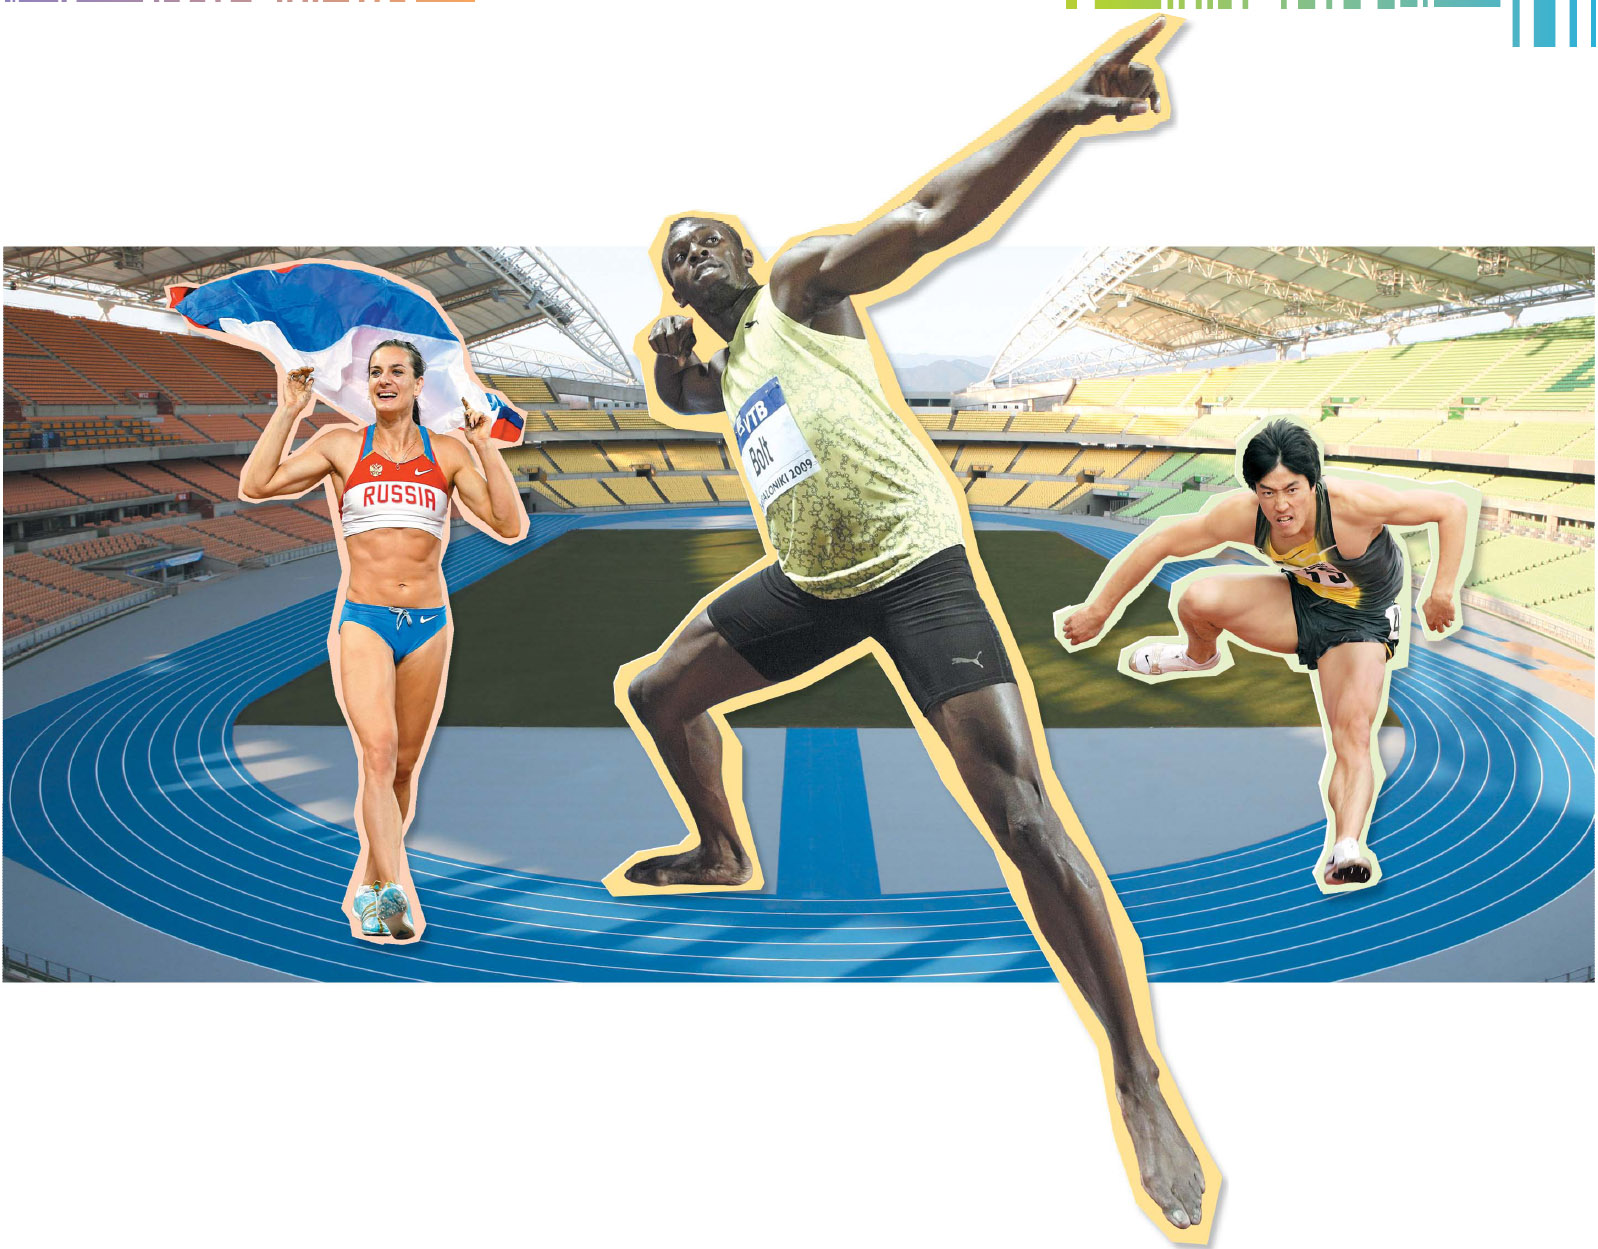   오는 8월 27일 개막되는 대구세계육상선수권대회에 출전하는 스타들. 여자 장대높이뛰기 1인자 이신바예바(왼쪽부터), 남자 100m의 우사인 볼트, 남자 110m 허들의 류샹.  그래픽 길종만기자 kjman@seoul.co.kr  